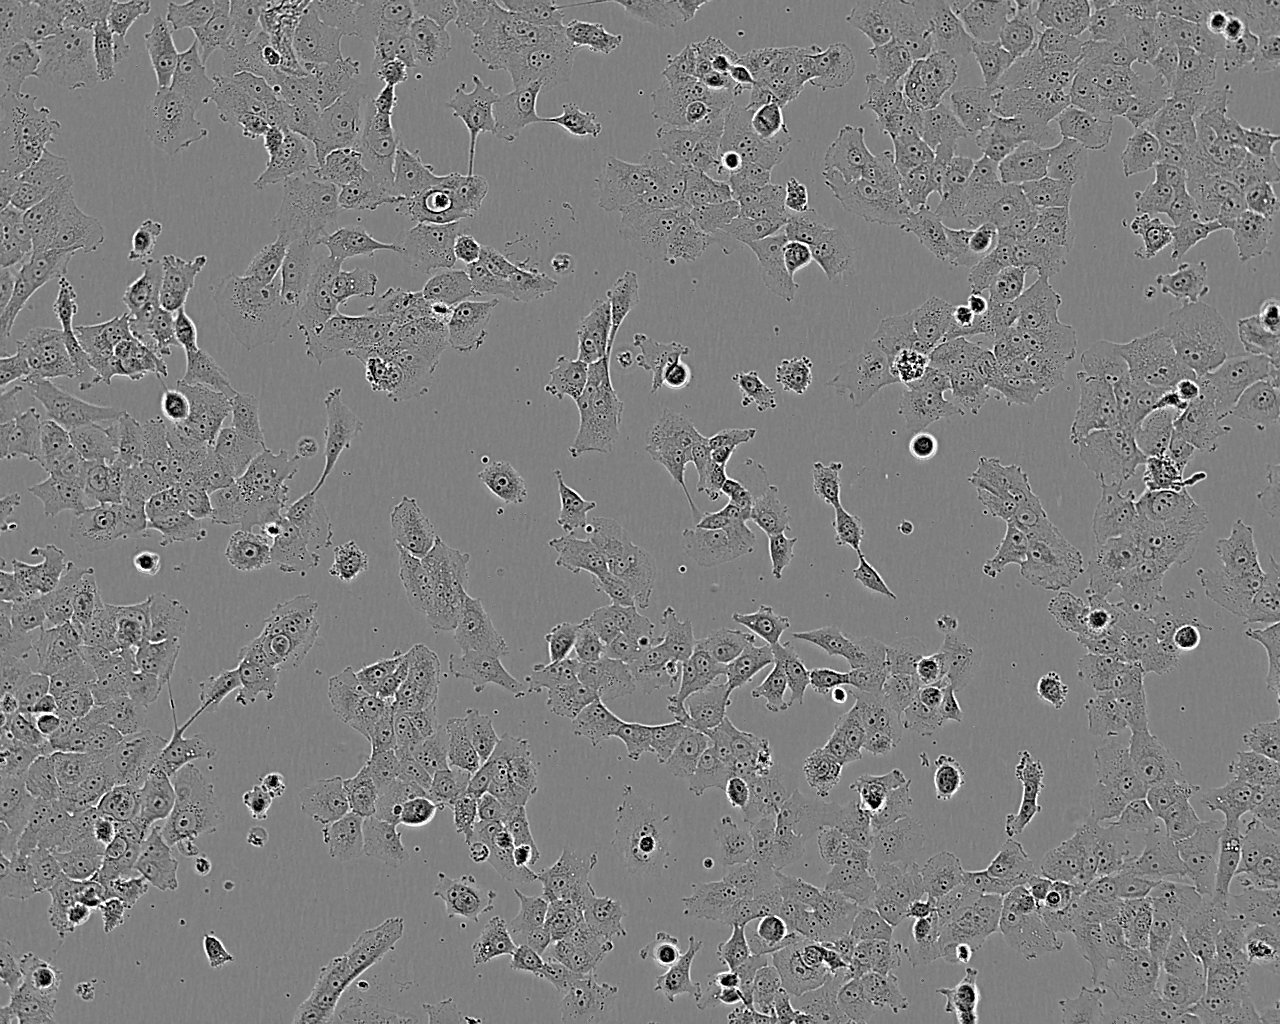 PC-3M-1E8 Cell:人前列腺癌高转移细胞系,PC-3M-1E8 Cell